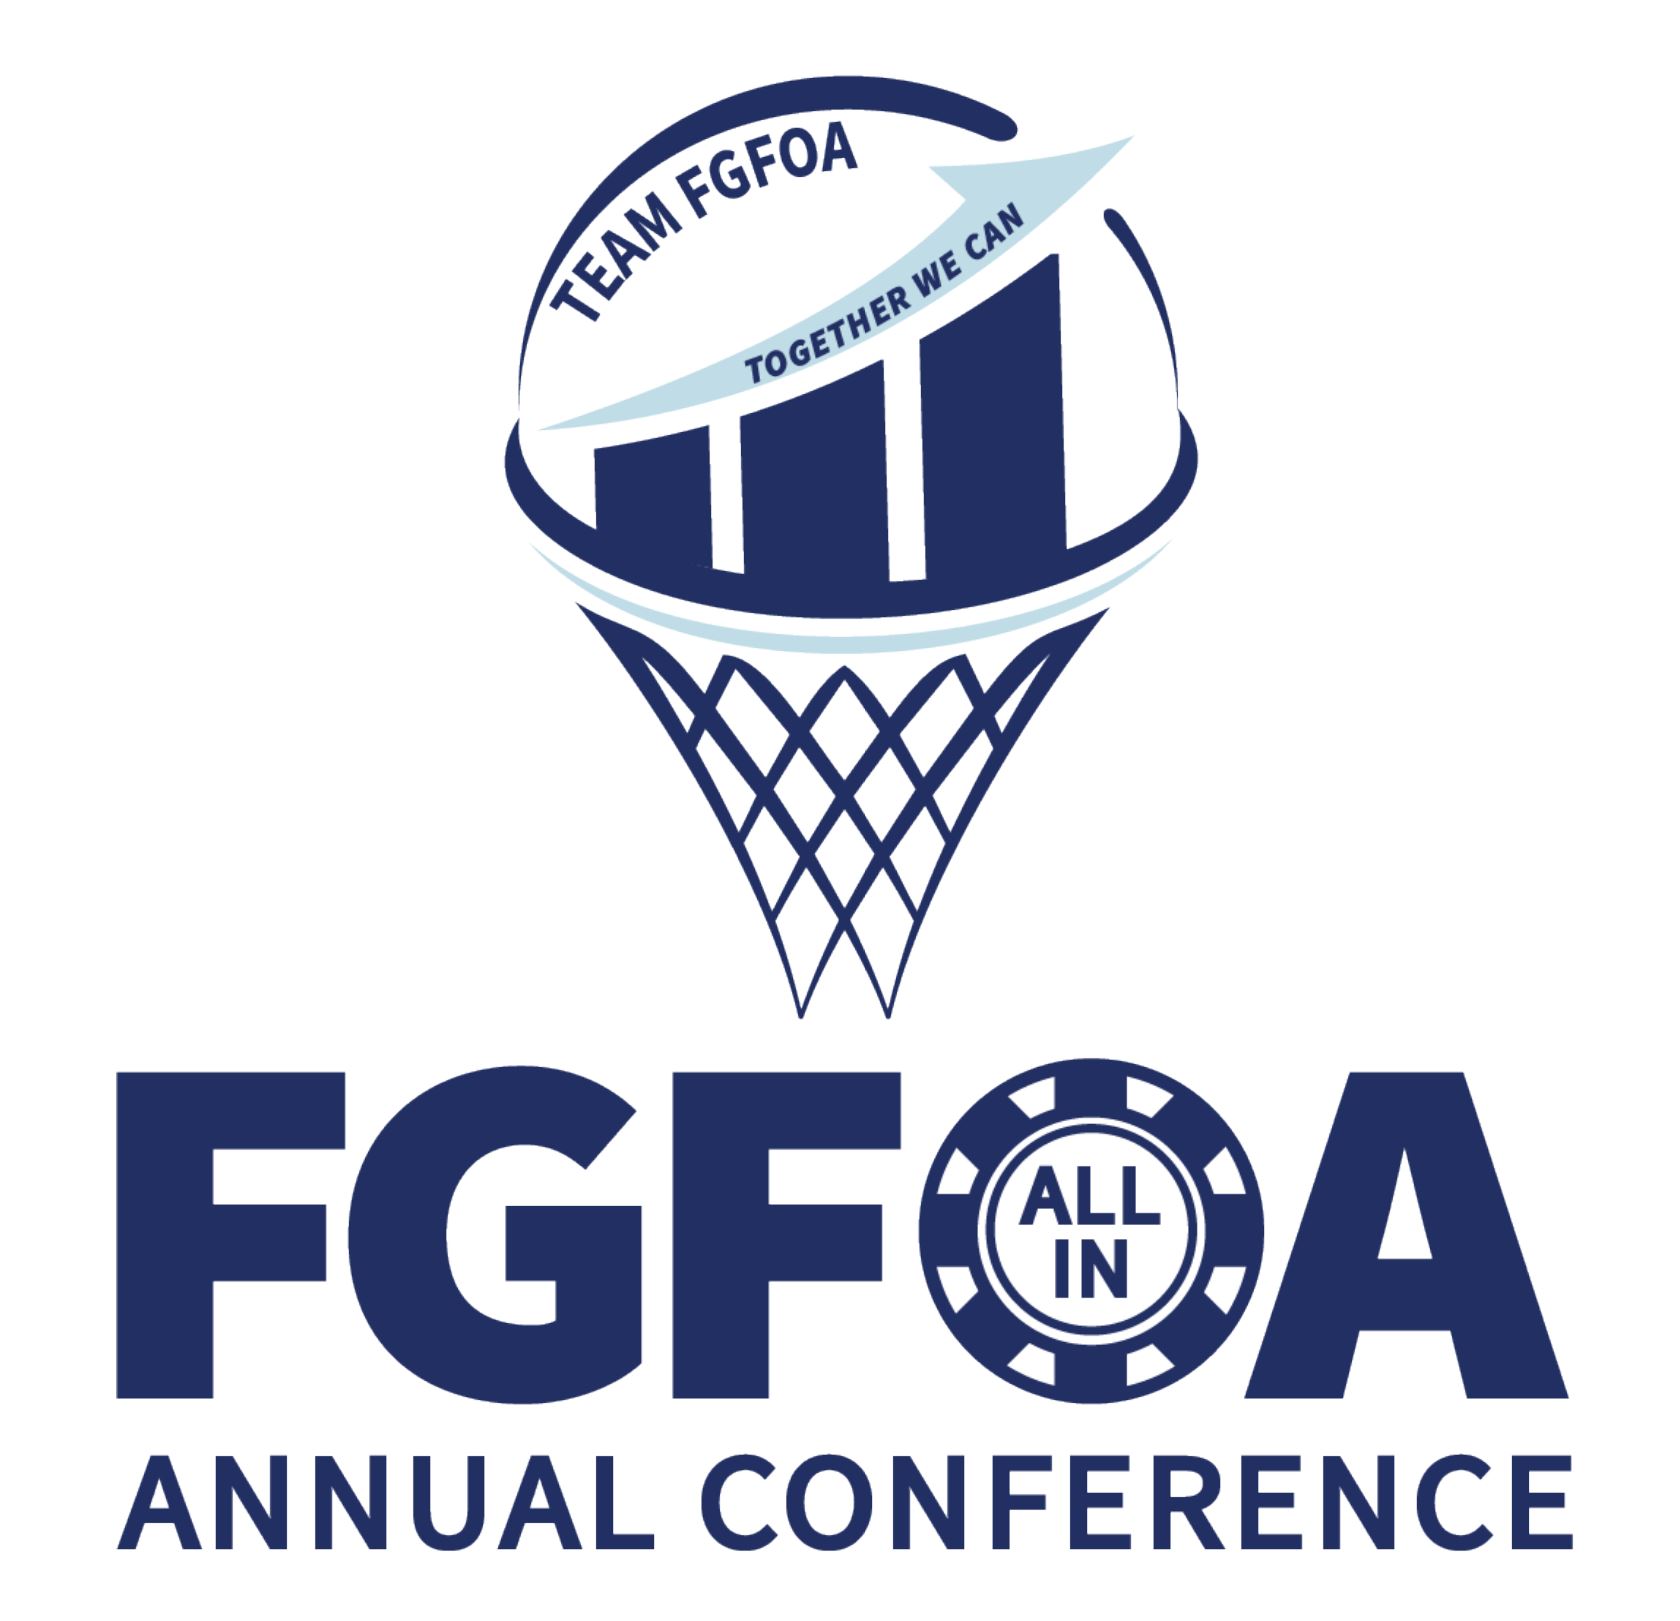 FGFOA Annual conference